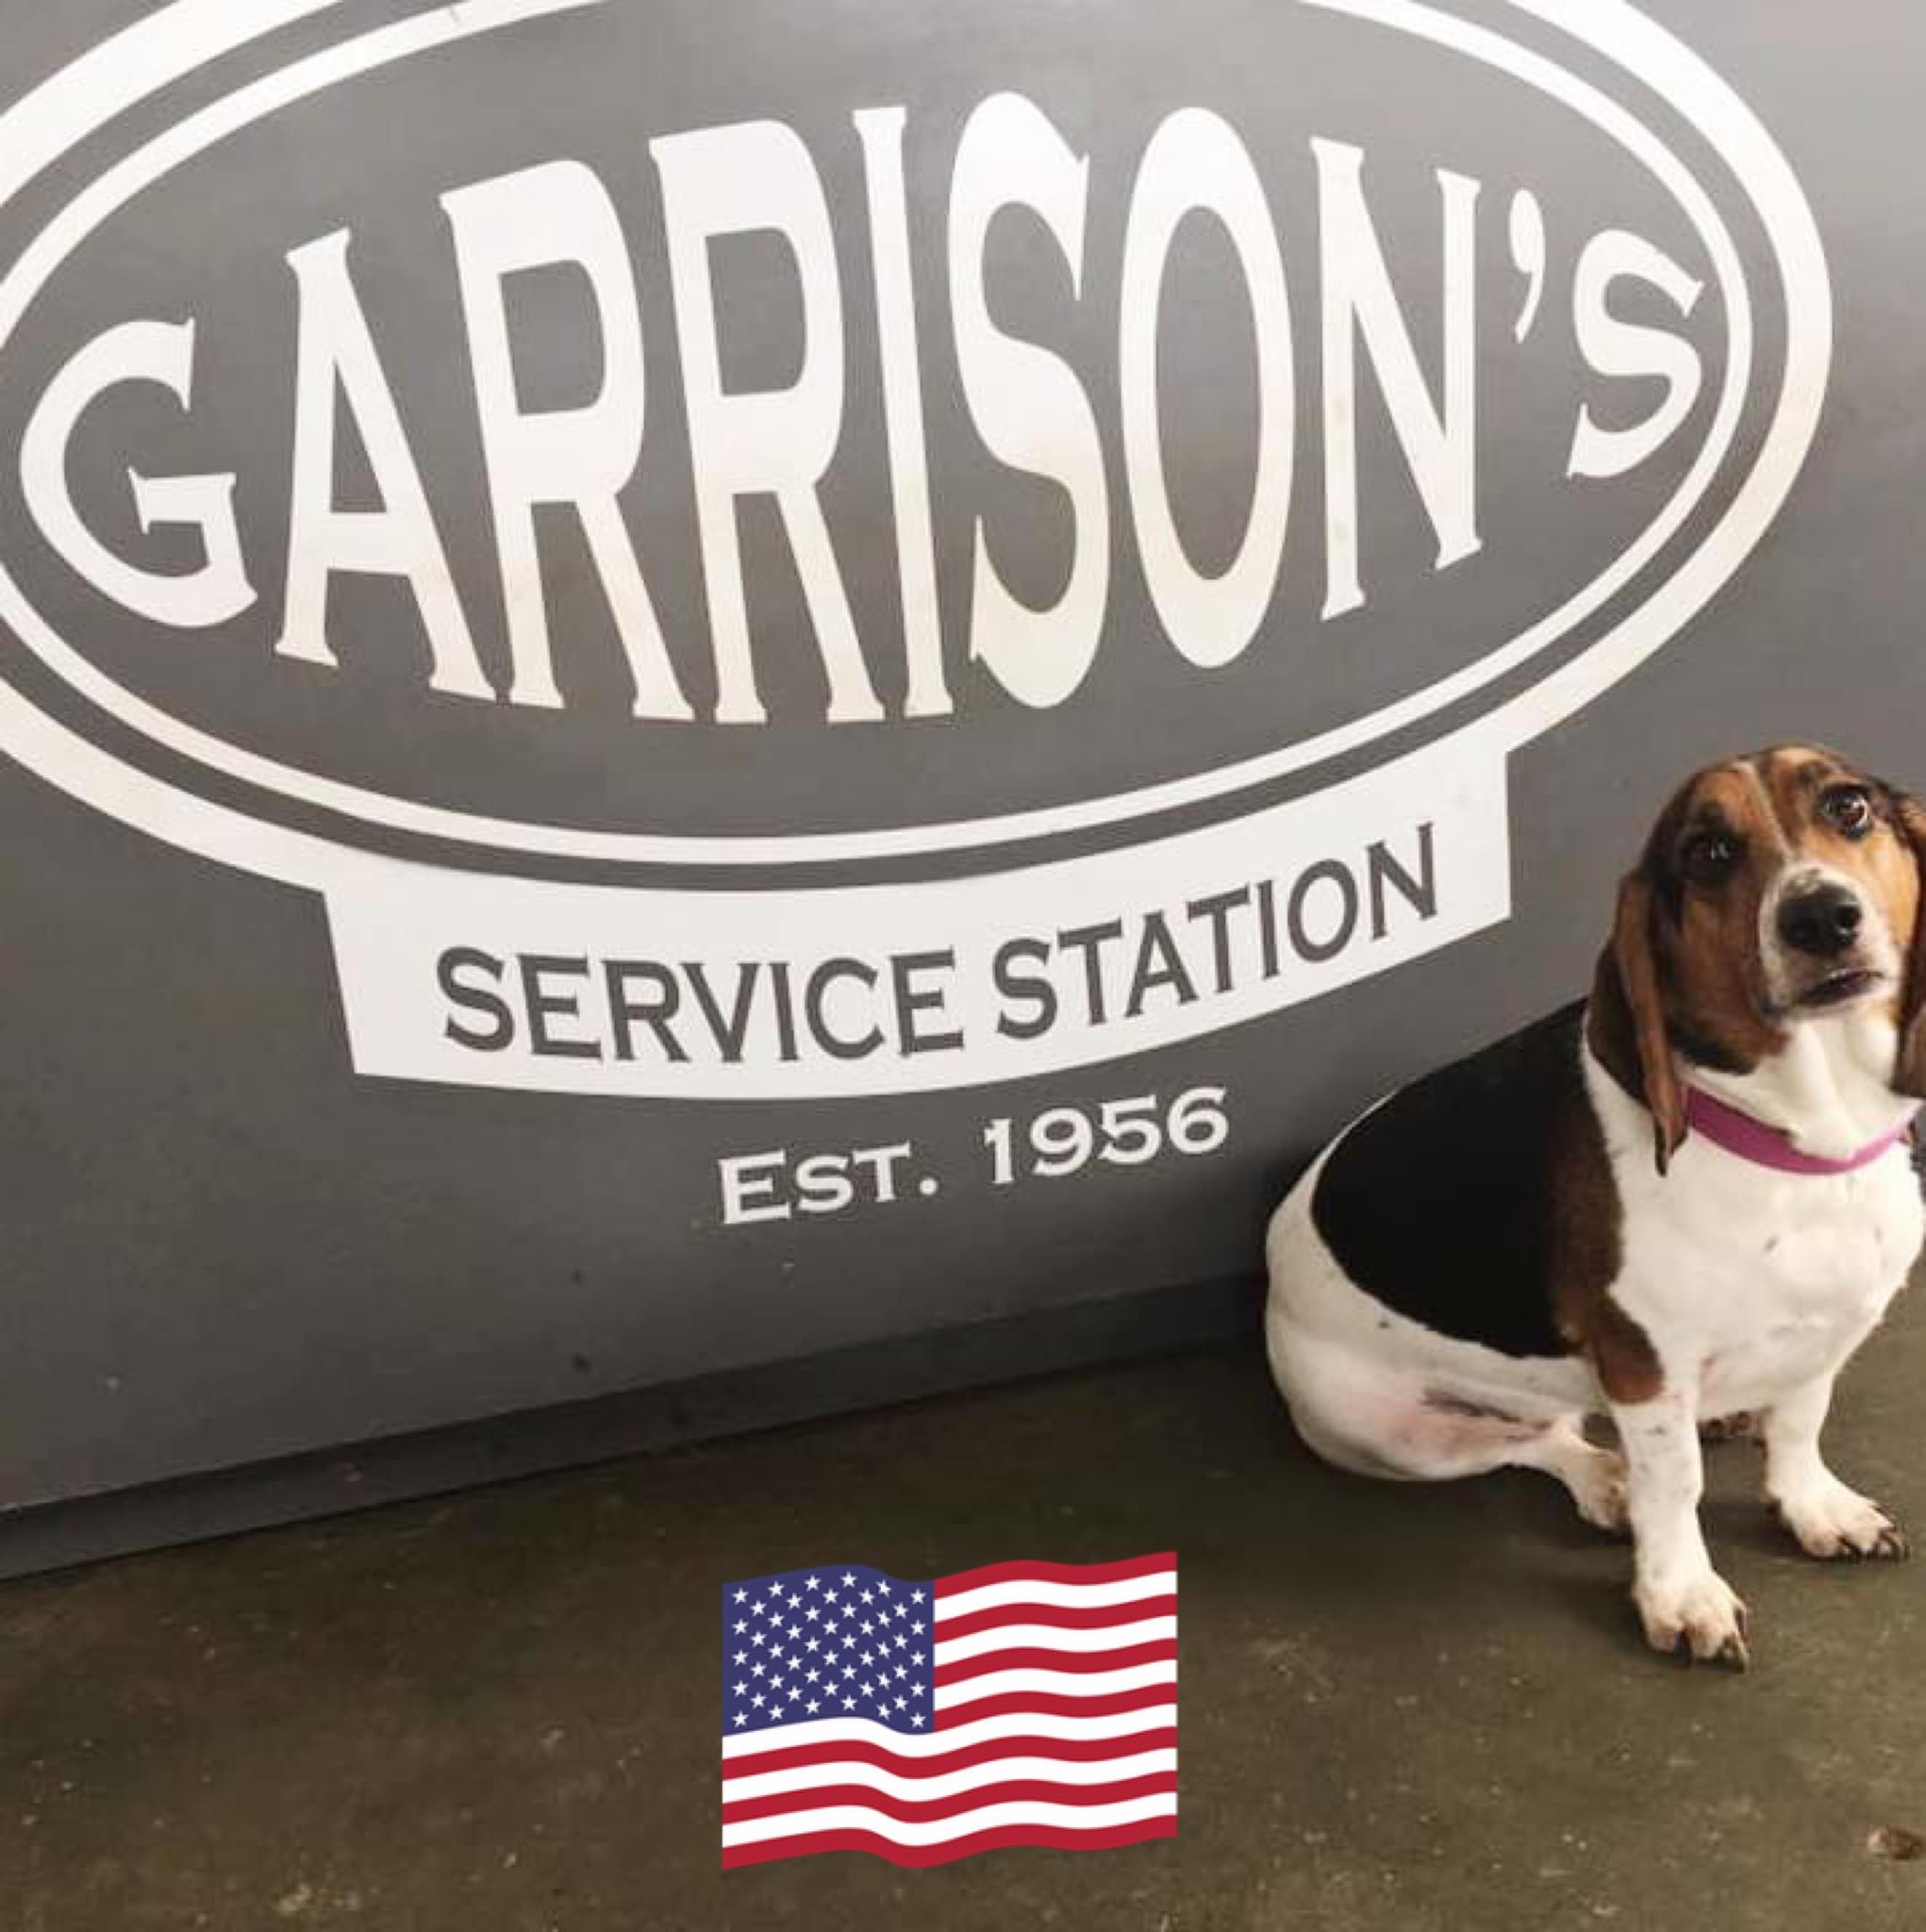 Garrison's Service Center